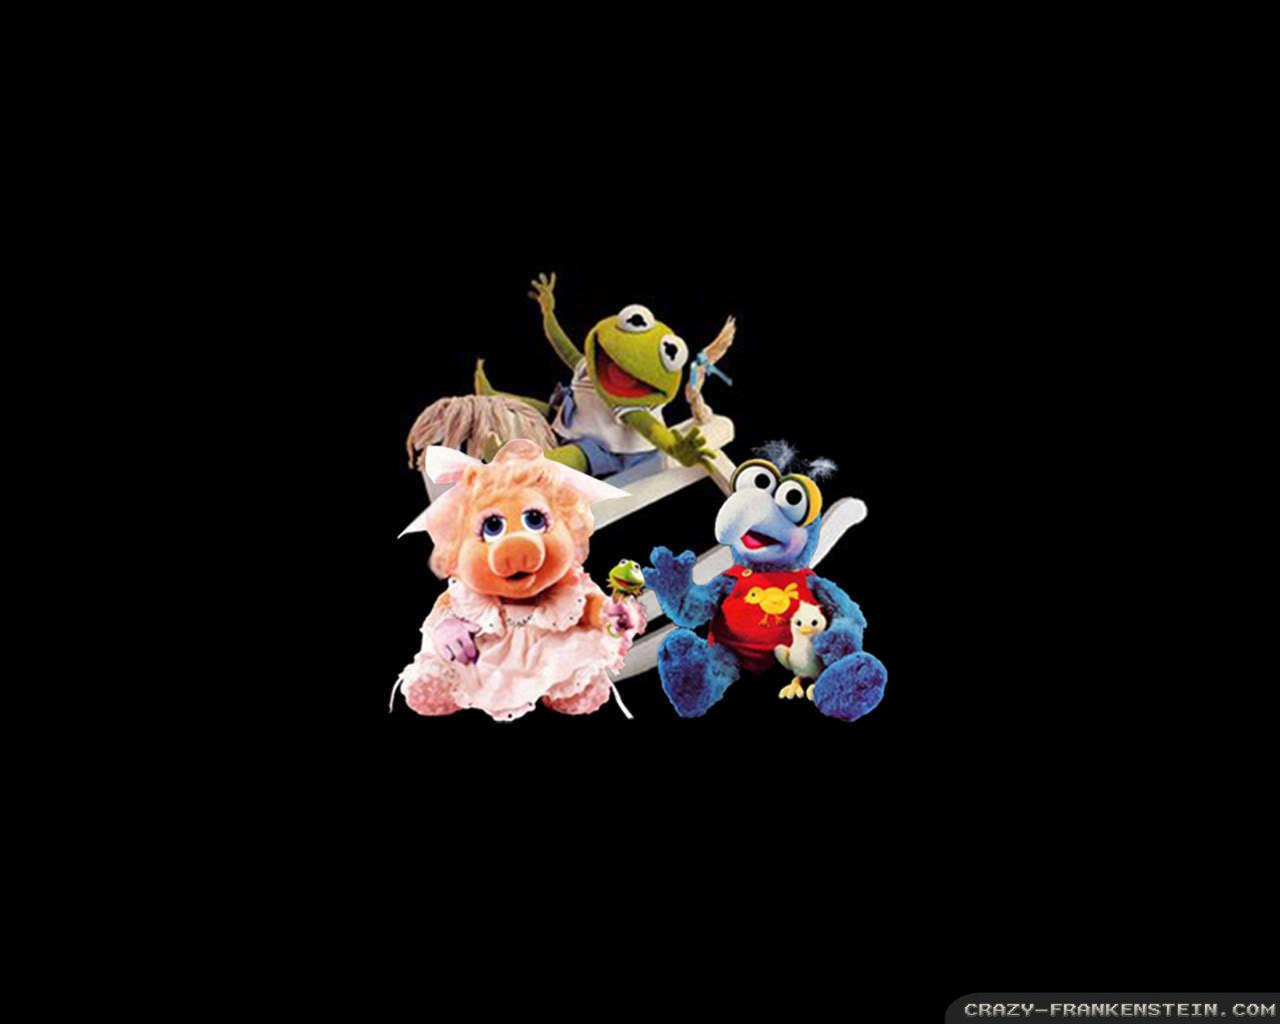 Muppet Babies wallpaper